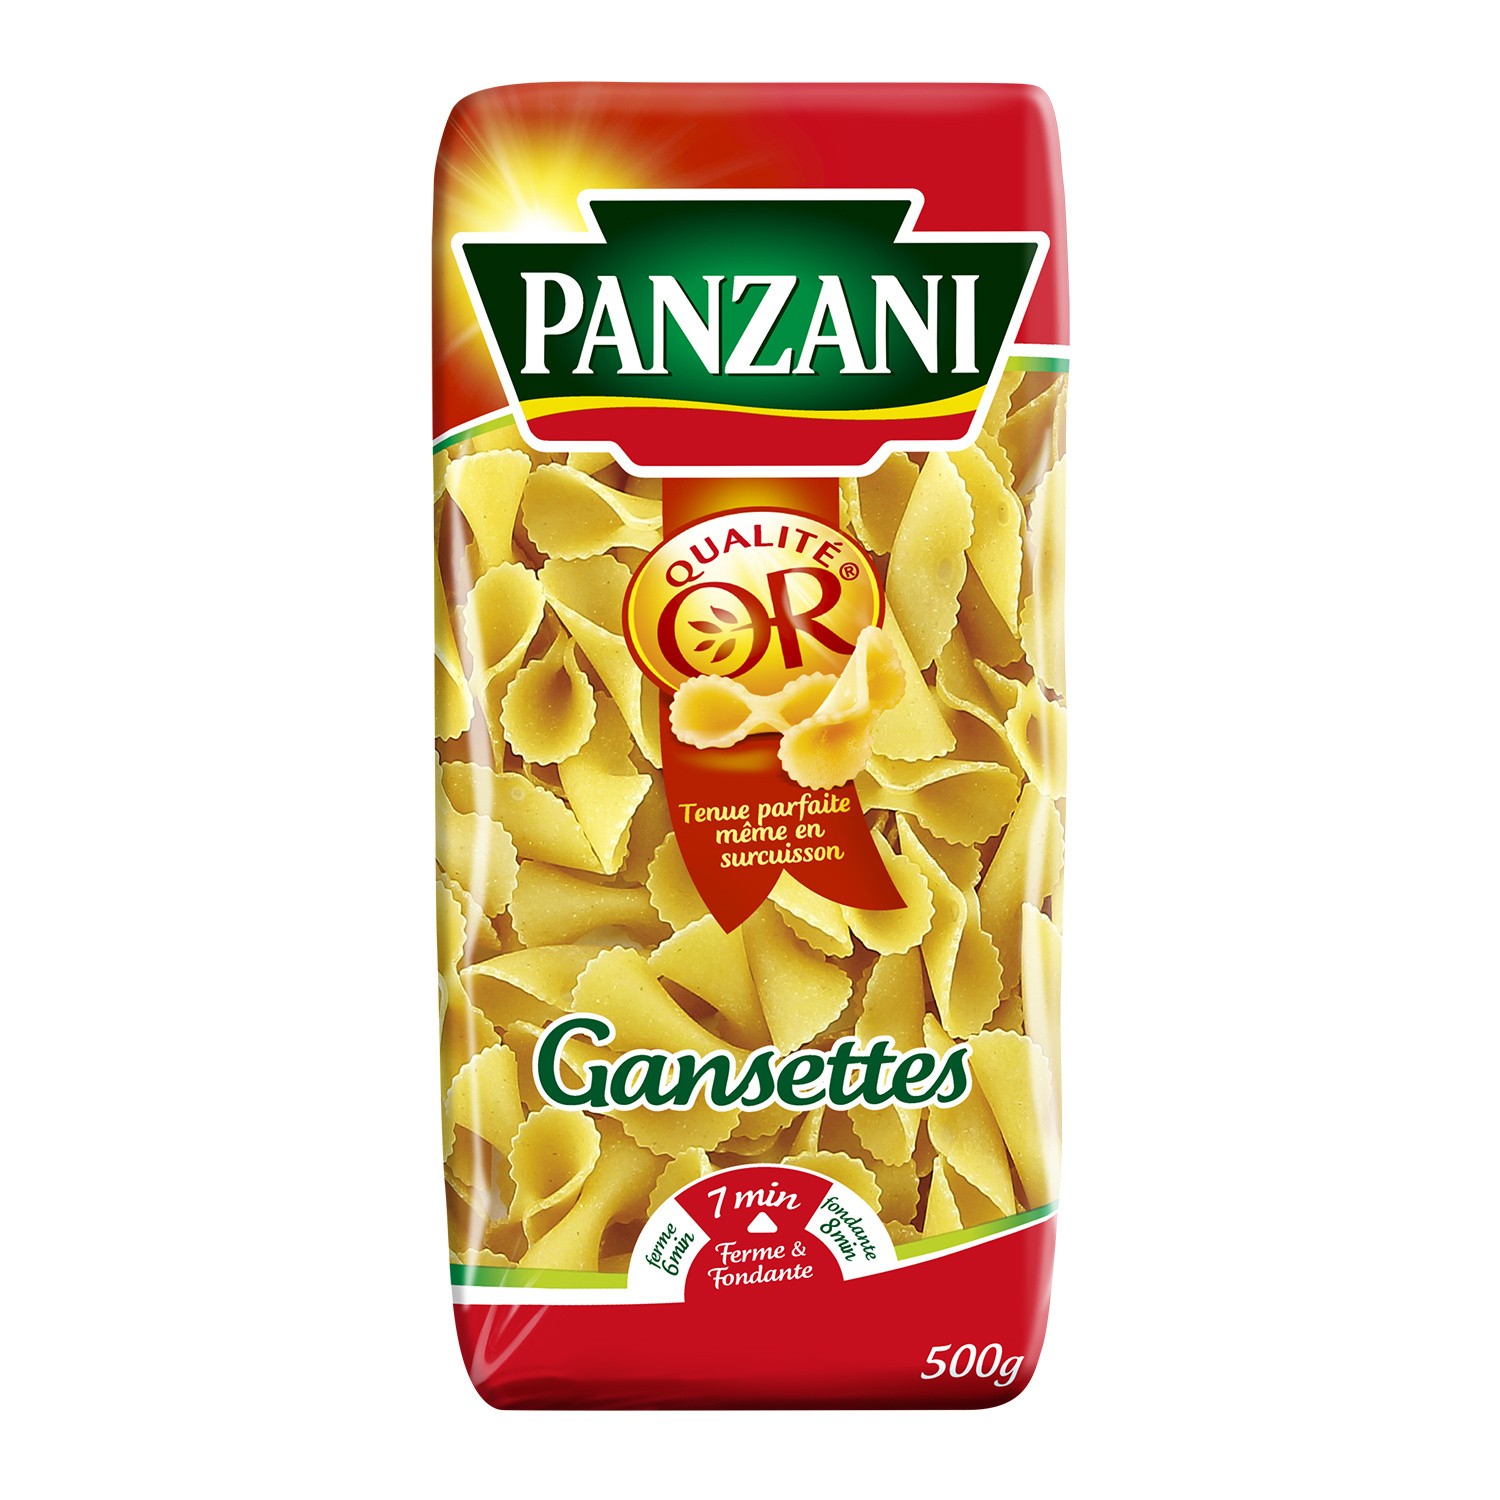 Livraison à domicile Promotion Panzani Pâtes Gansettes, Lot de 2x500g